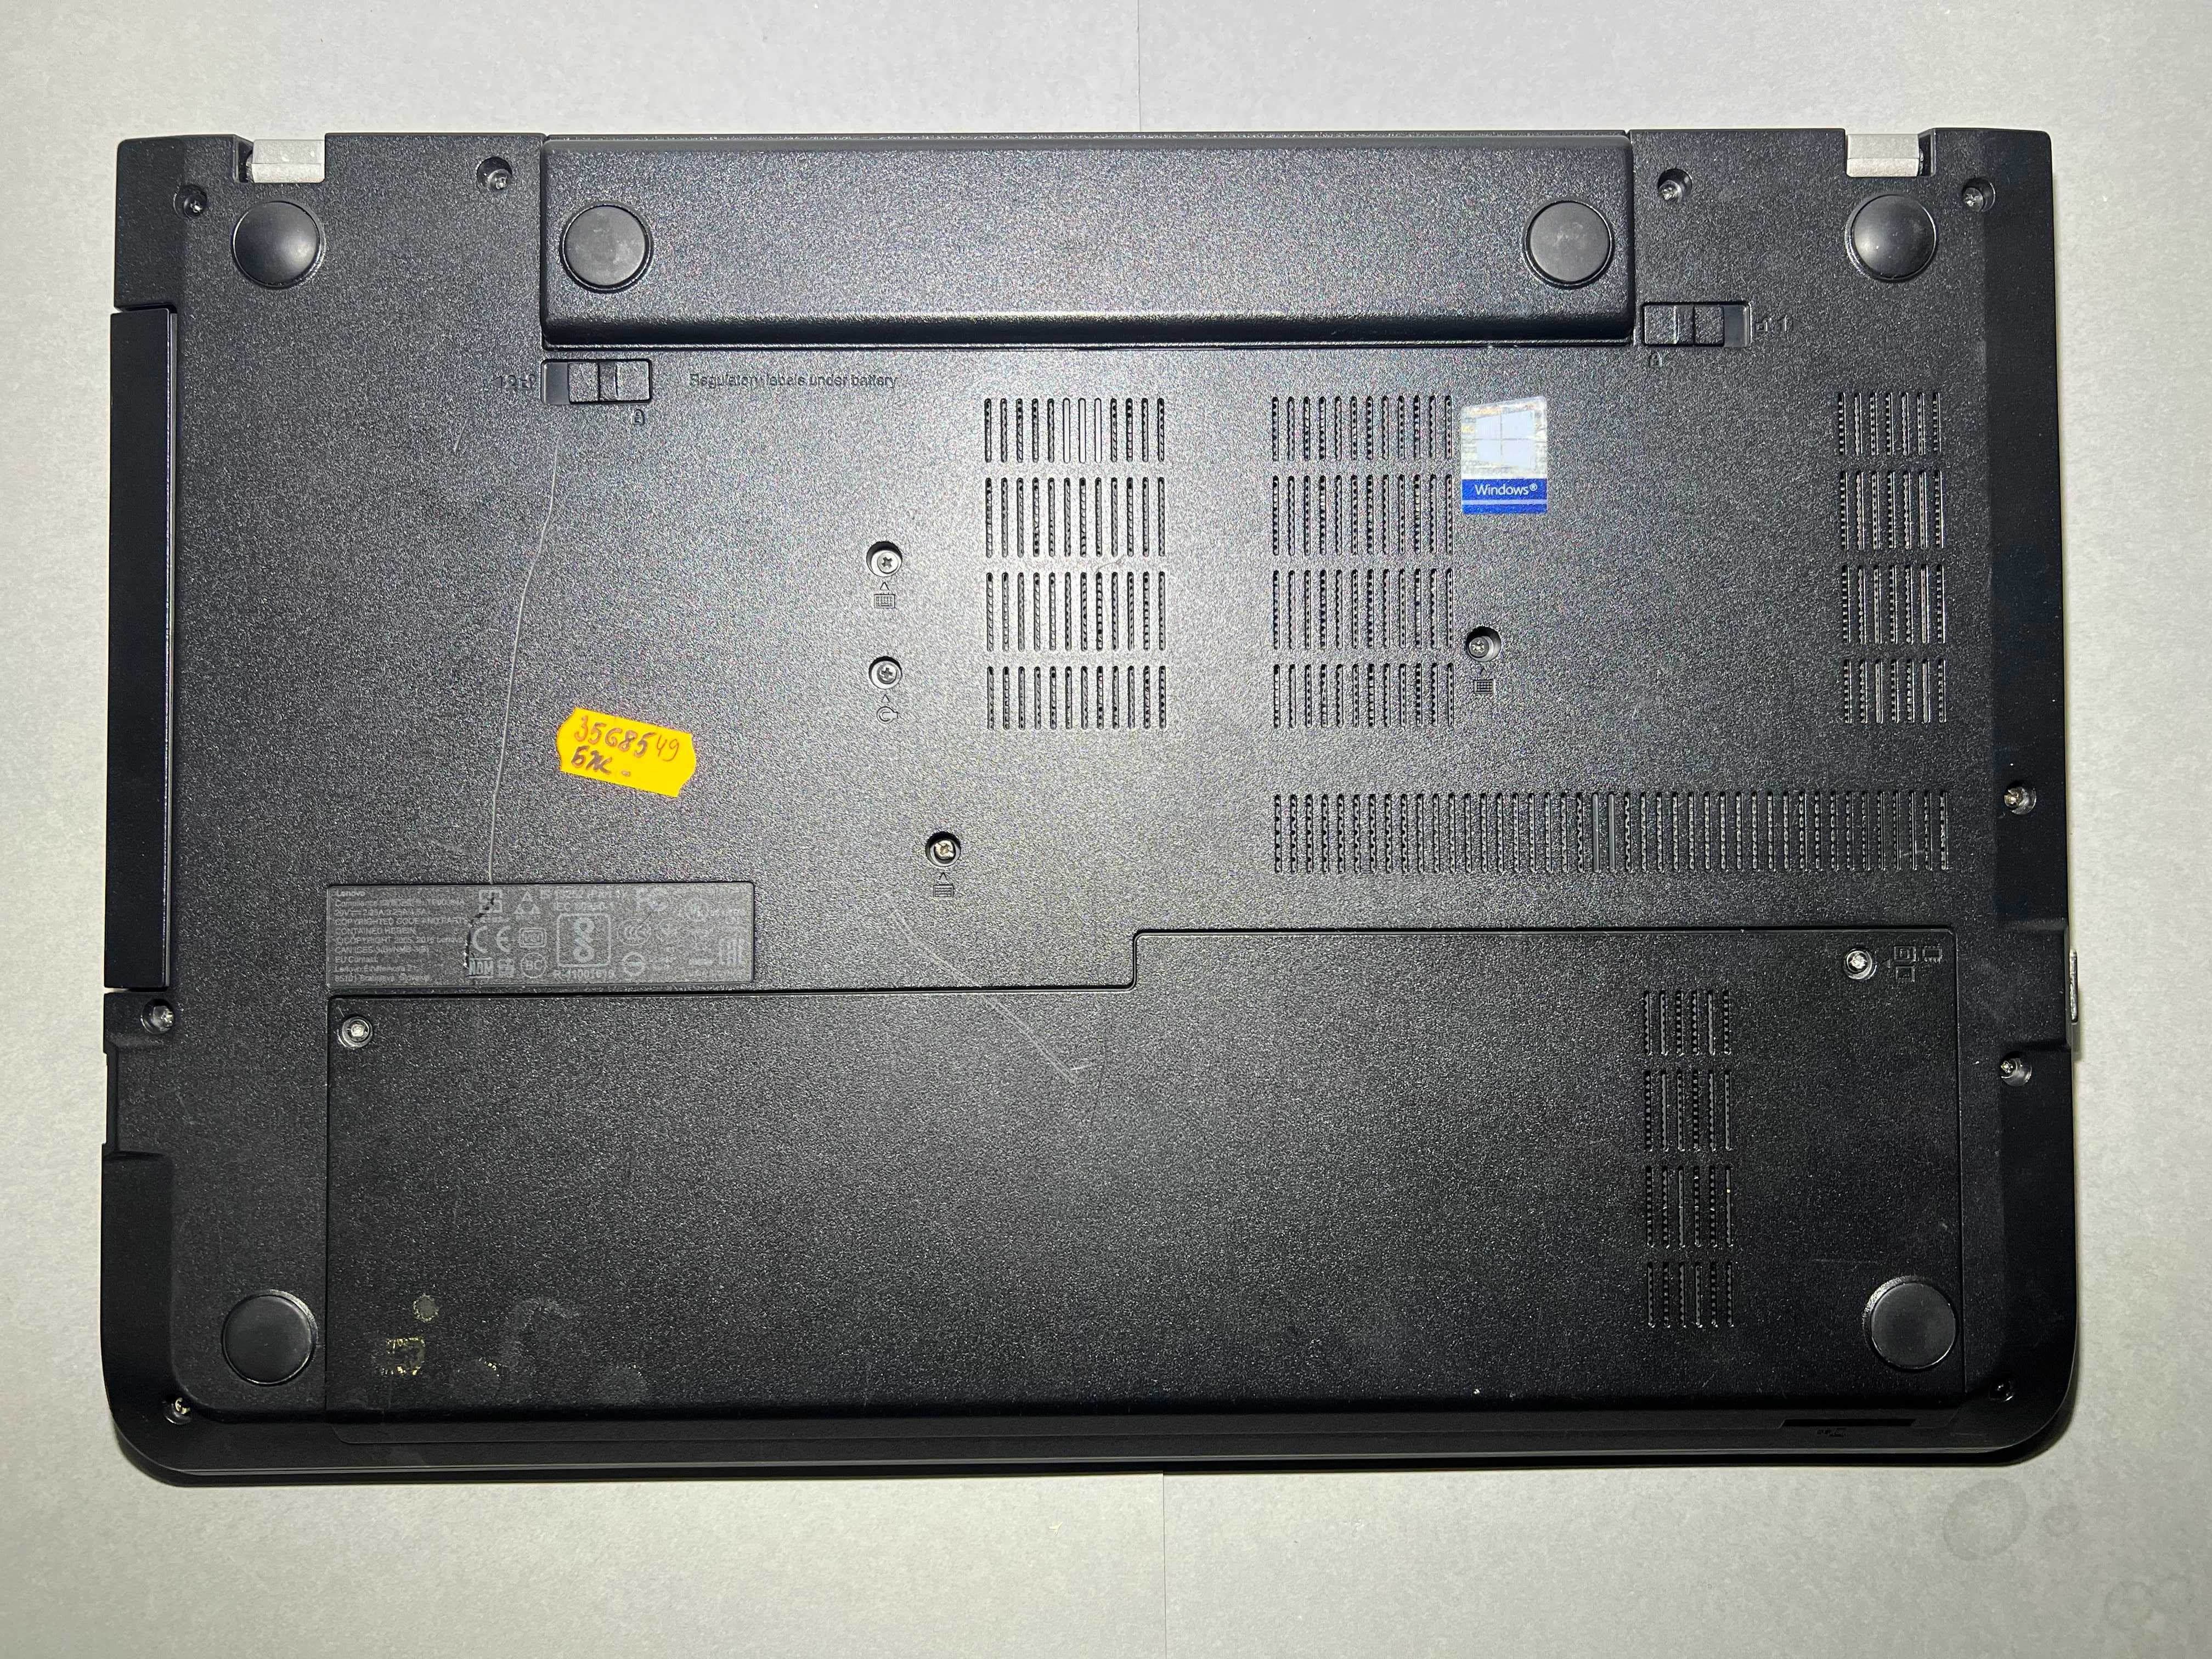 Lenovo ThinkPad E570/i7-7500U/8GB/SSD 240GB/nVidia GTX 950M,2GB/FHD